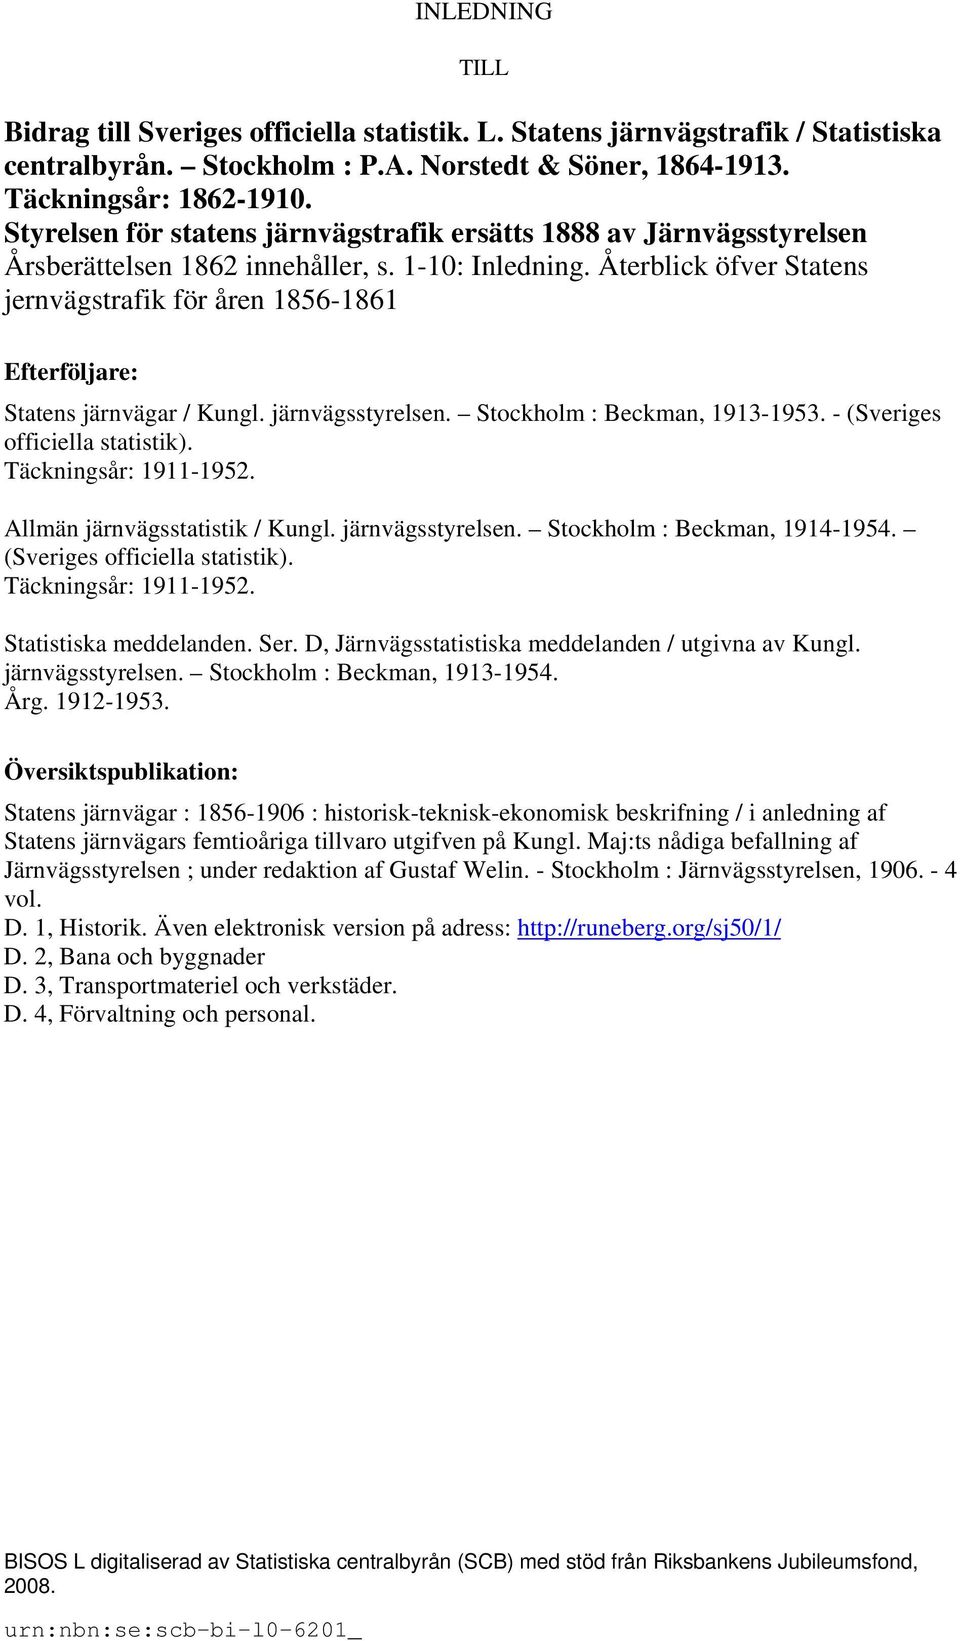 Återblick öfver Statens jernvägstrafik för åren 1856-1861 Efterföljare: Statens järnvägar / Kungl. järnvägsstyrelsen. Stockholm : Beckman, 1913-1953. - (Sveriges officiella statistik).